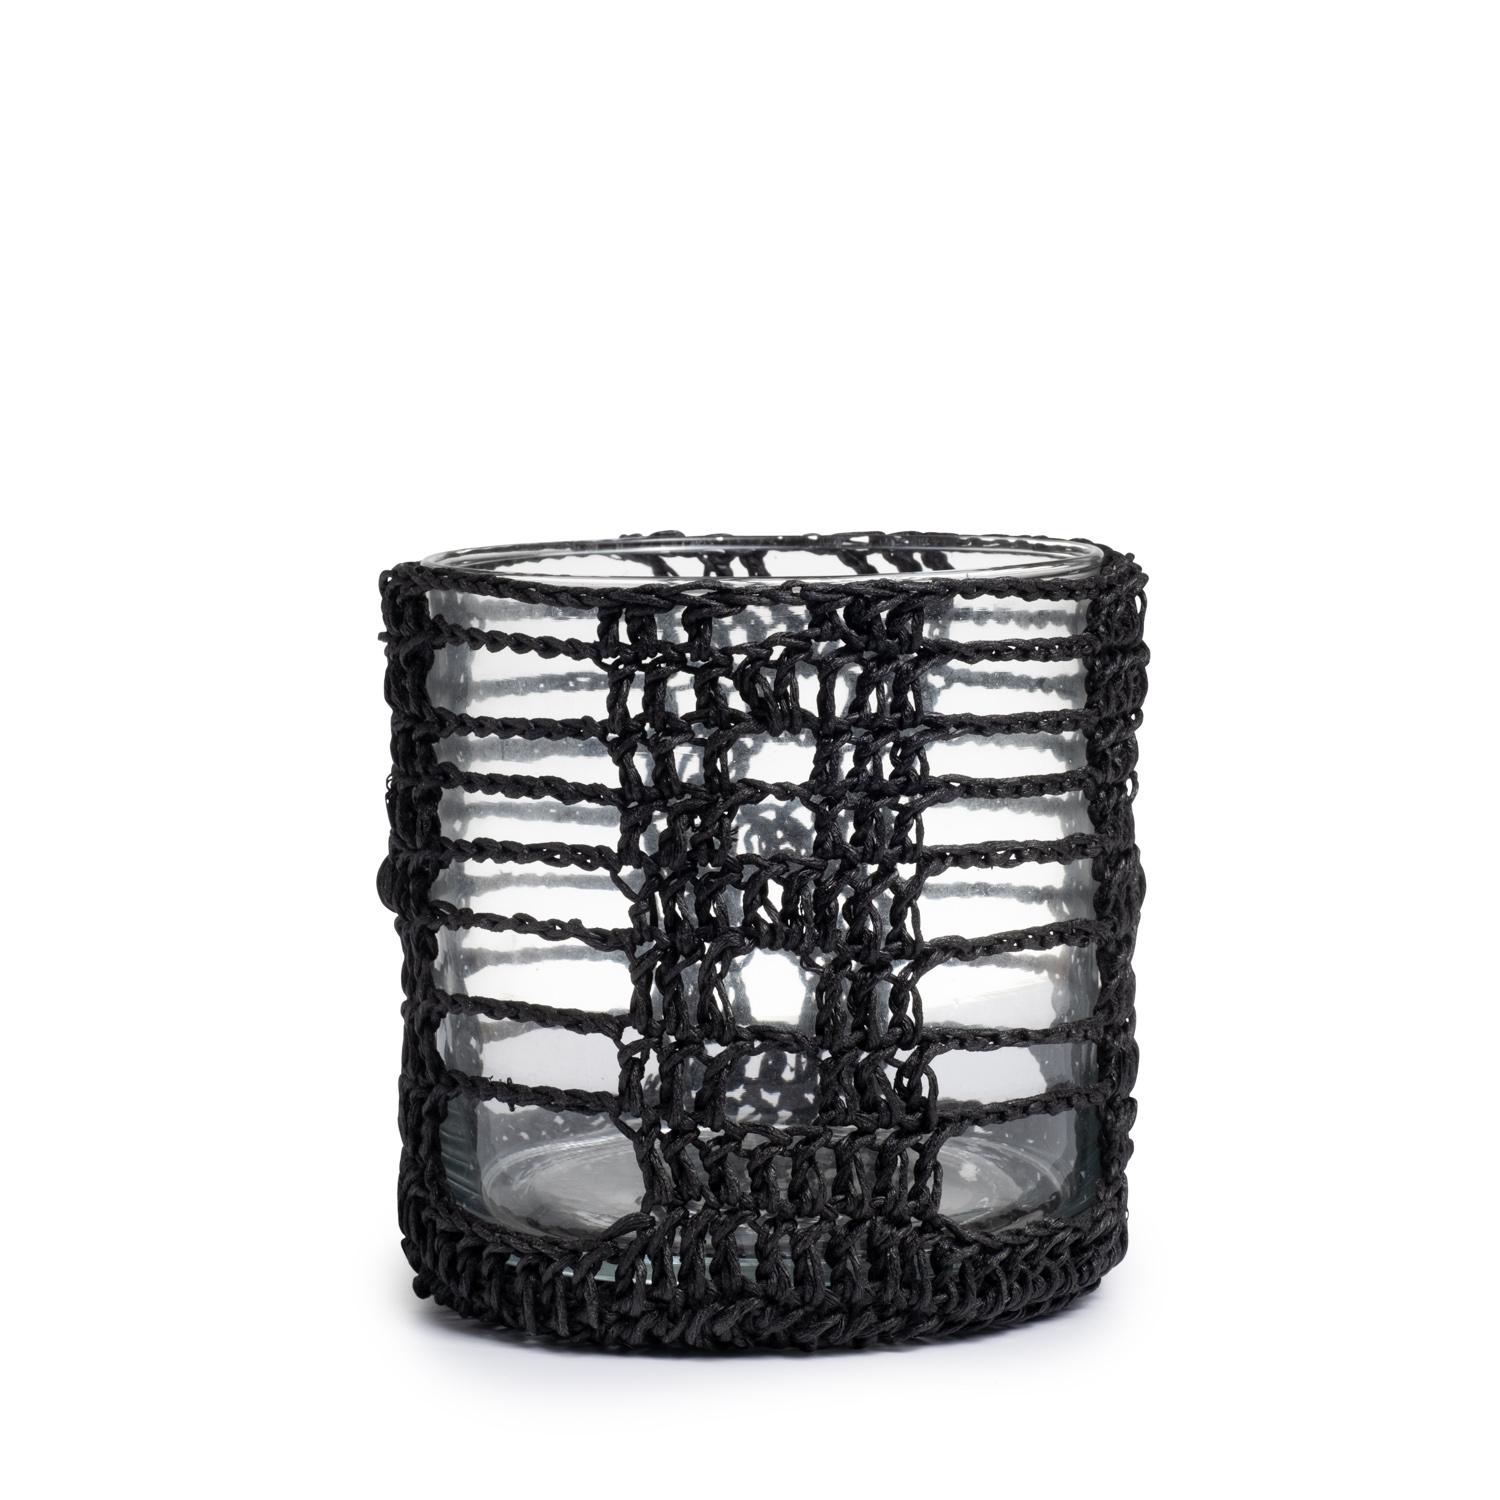 Crocheted Mesh Basket Cylinder - Large - Black